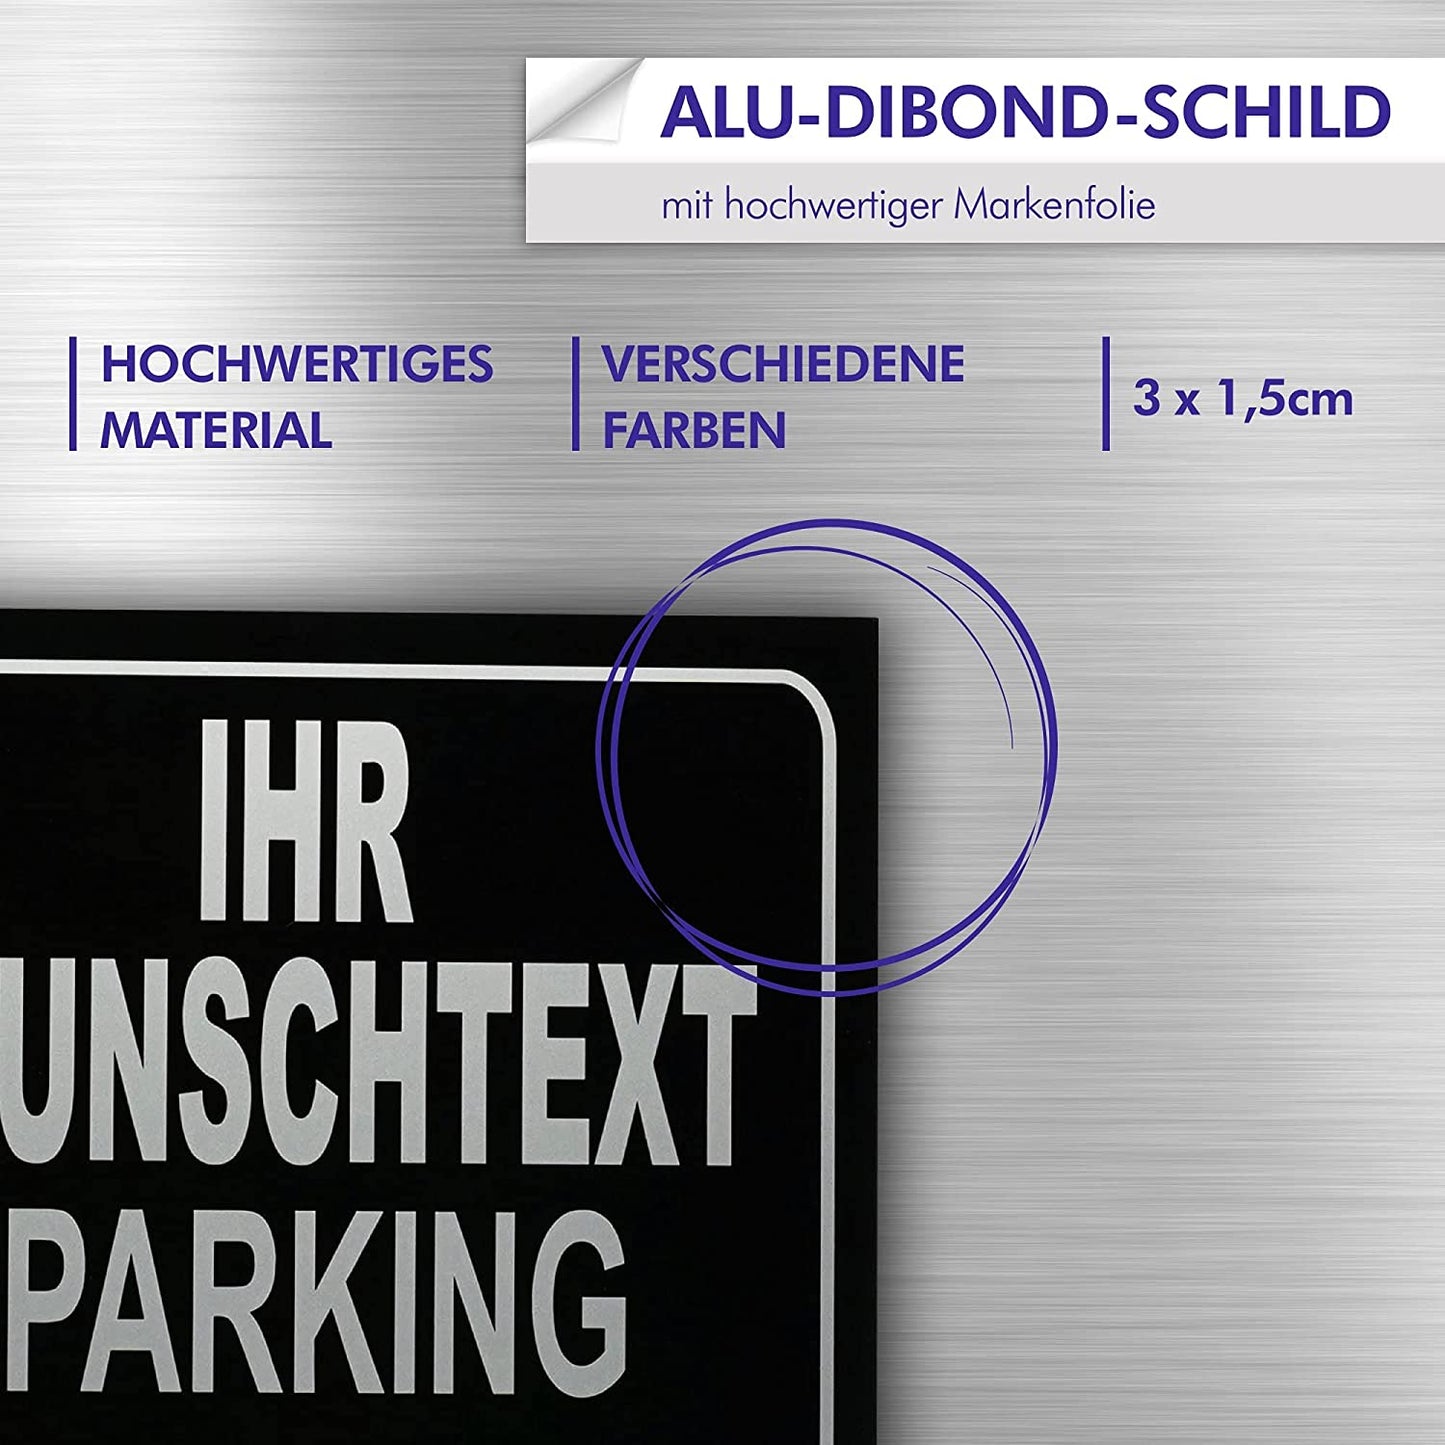 Parking Only - Parkplatzschild - Alle Anderen Werden abgeschleppt - Parkplatzschild 32x24 cm - Alu-Dibond - Individuell personalisiert